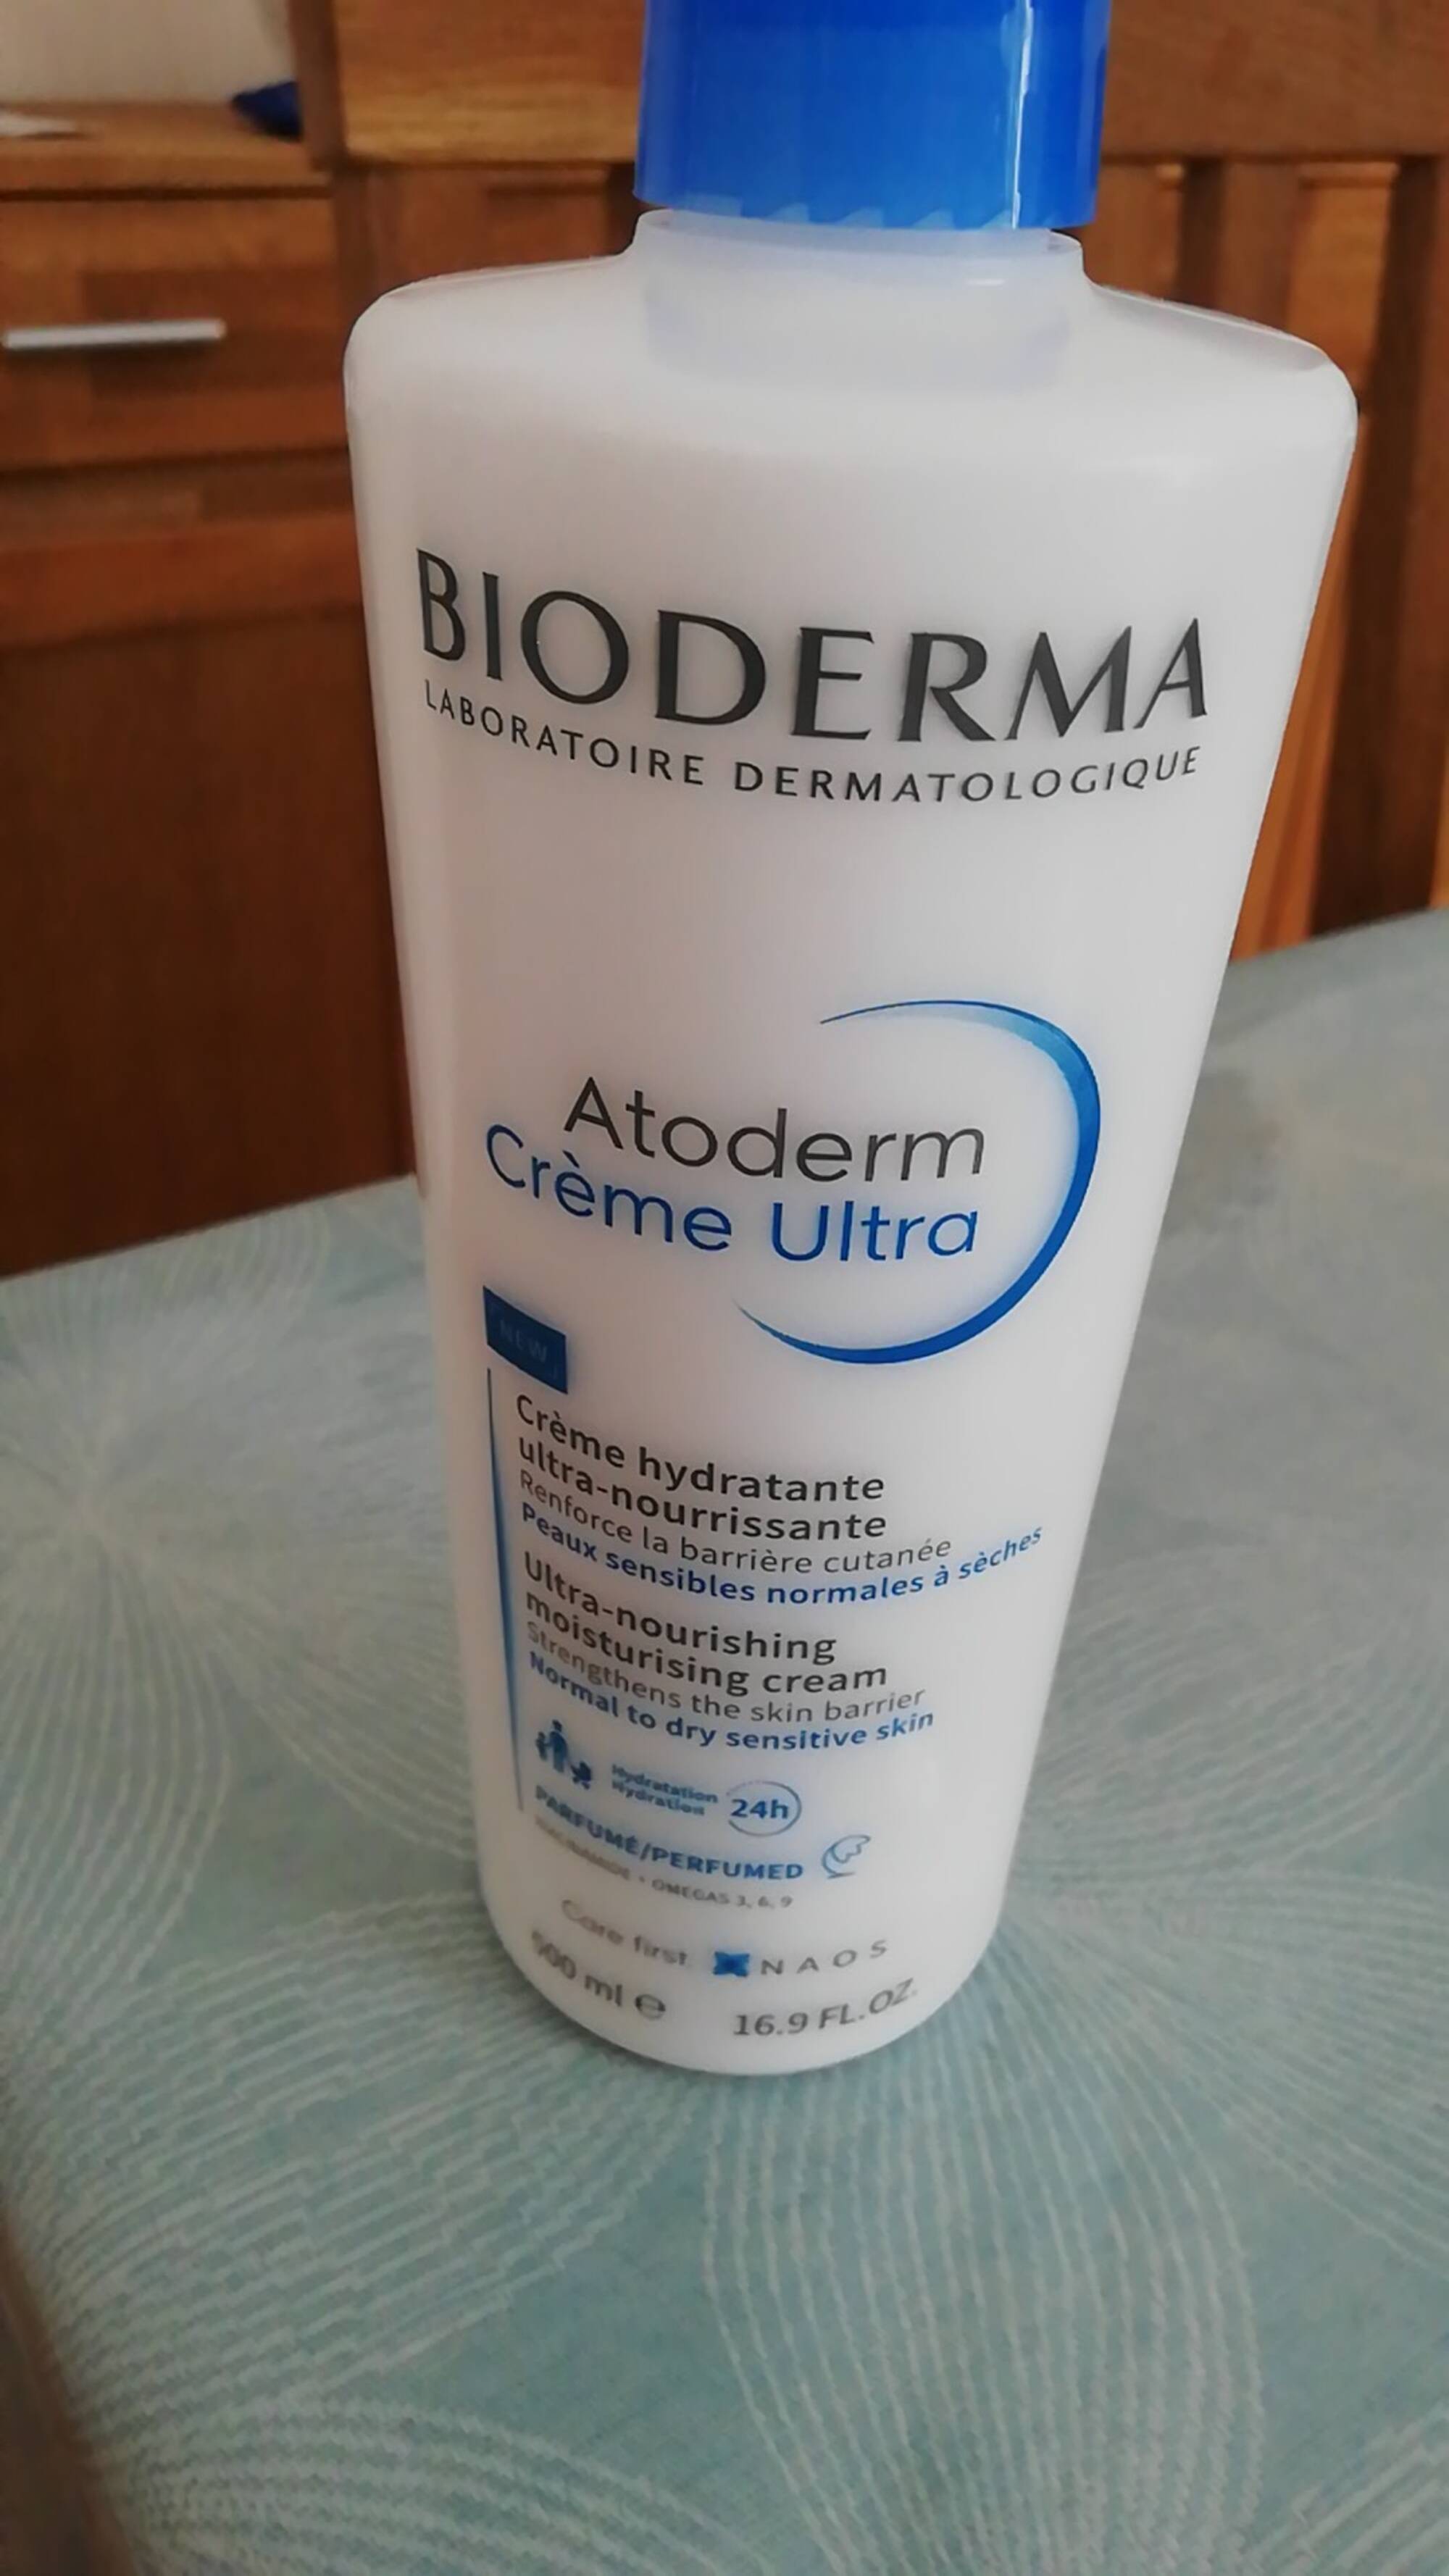 BIODERMA - Atoderm - Crème ultra hydratante